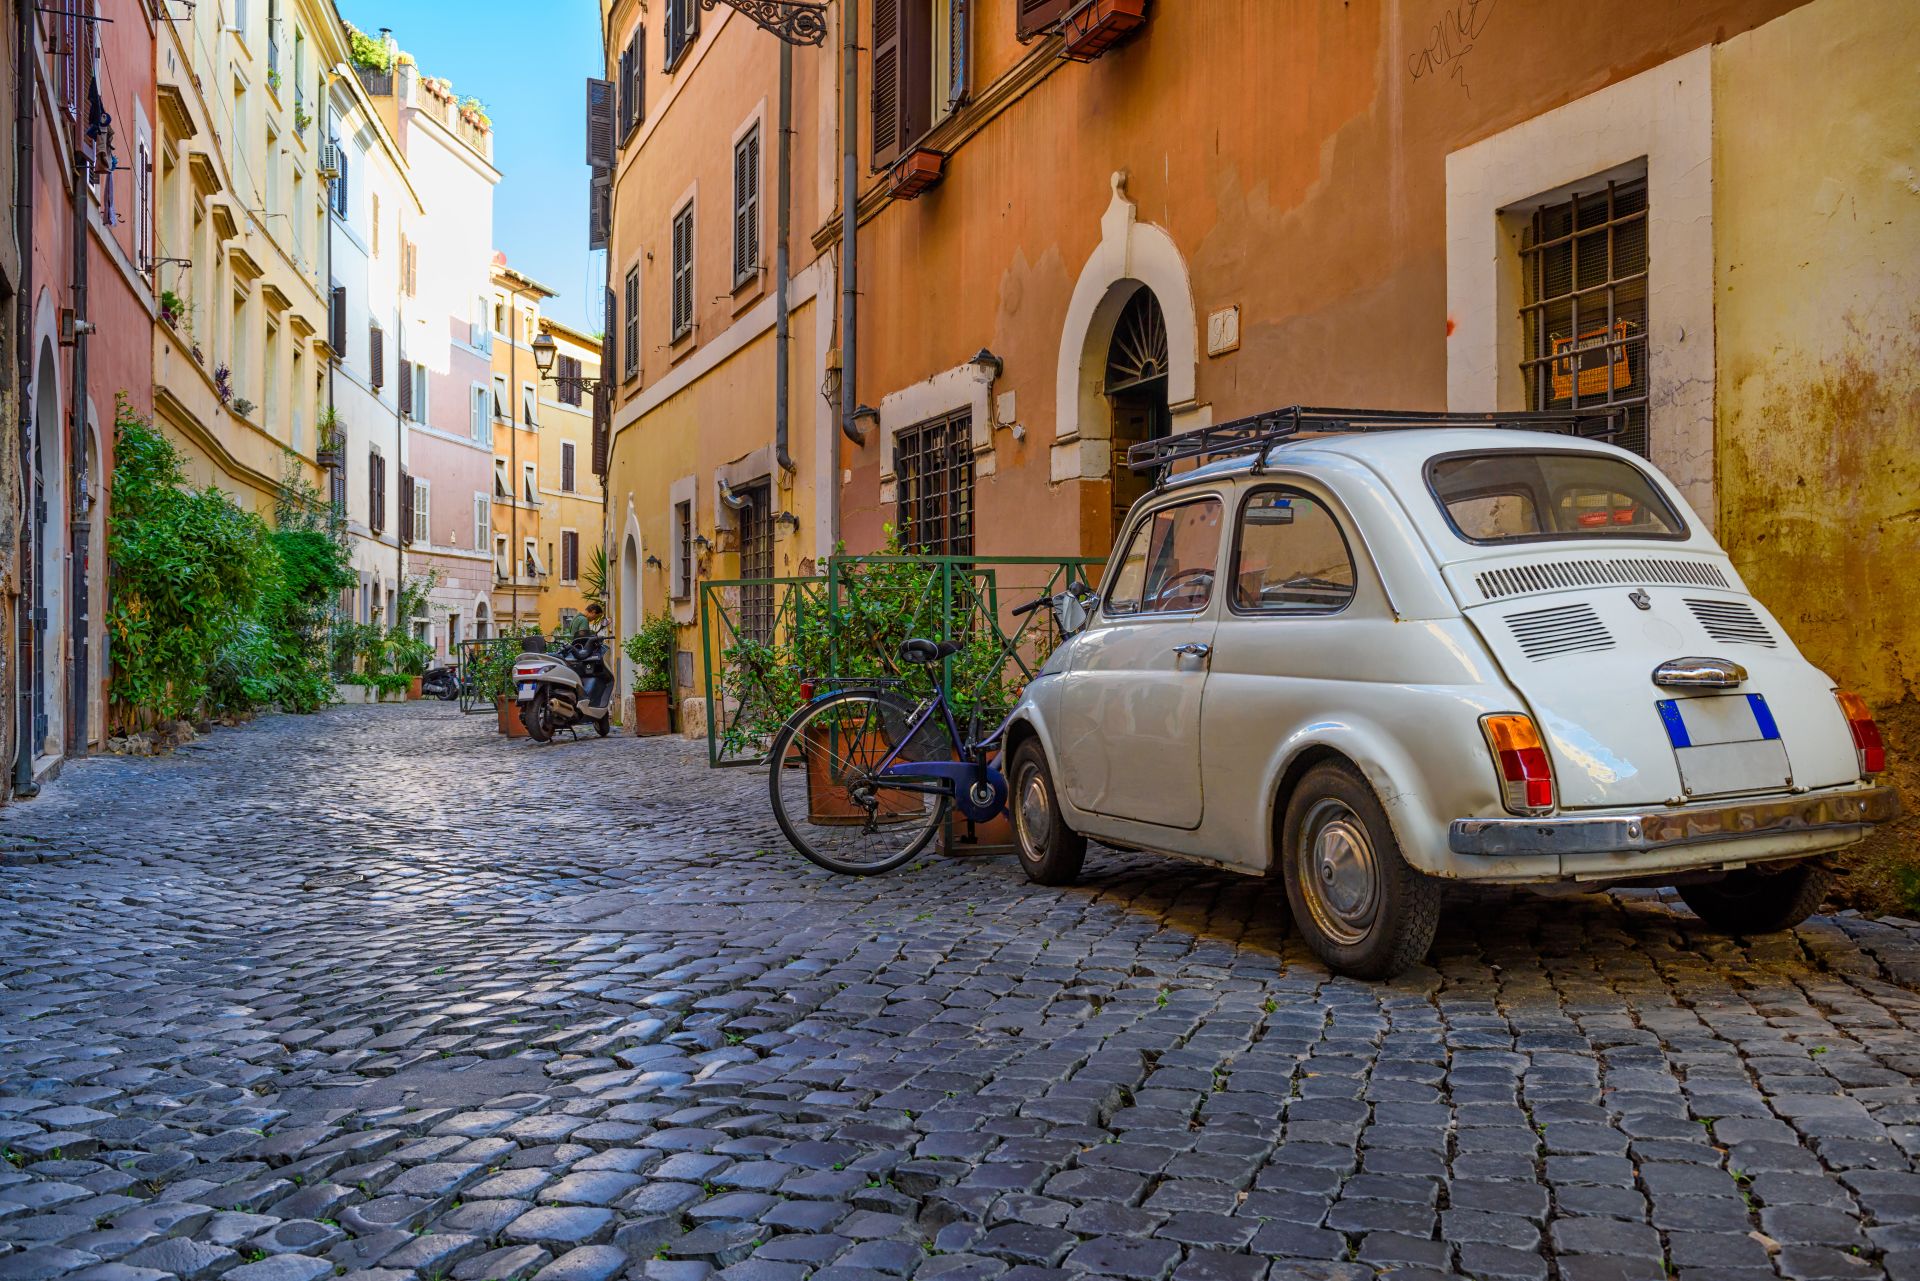 Cozy-old-street-in-Trastevere-in-Rome-Italy